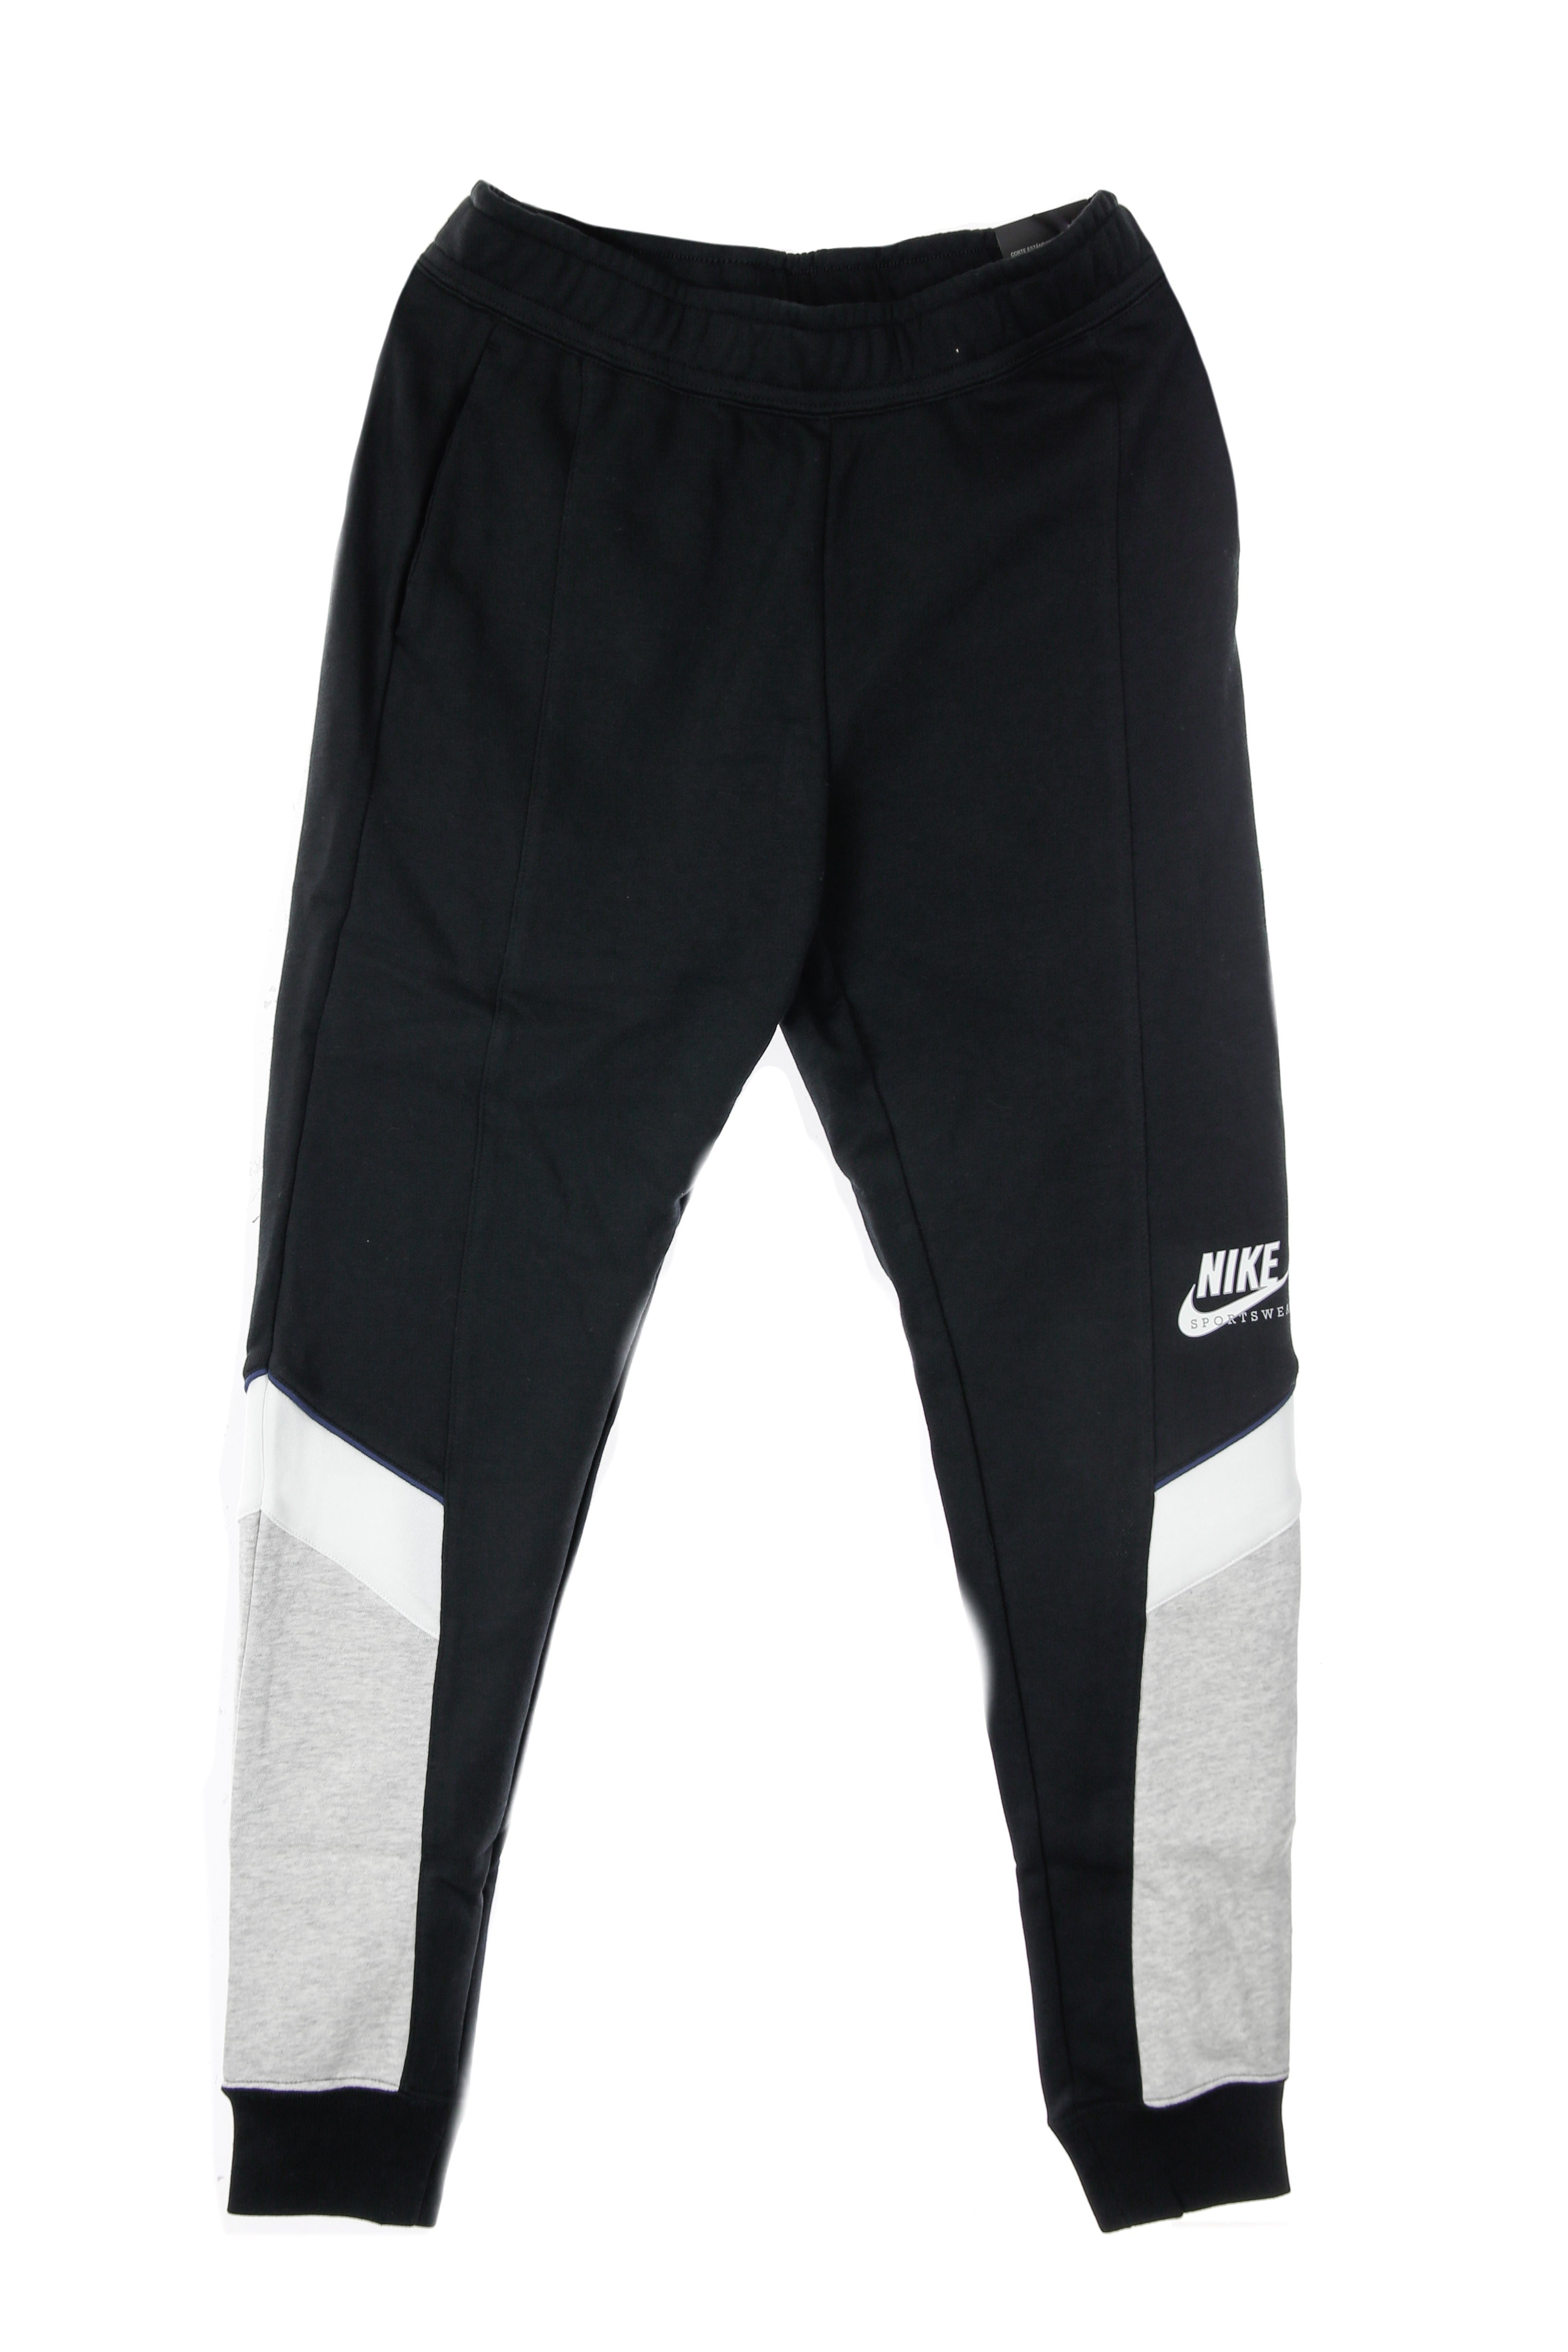 Nike, Pantalone Tuta Leggero Donna Heritage Jogger, 